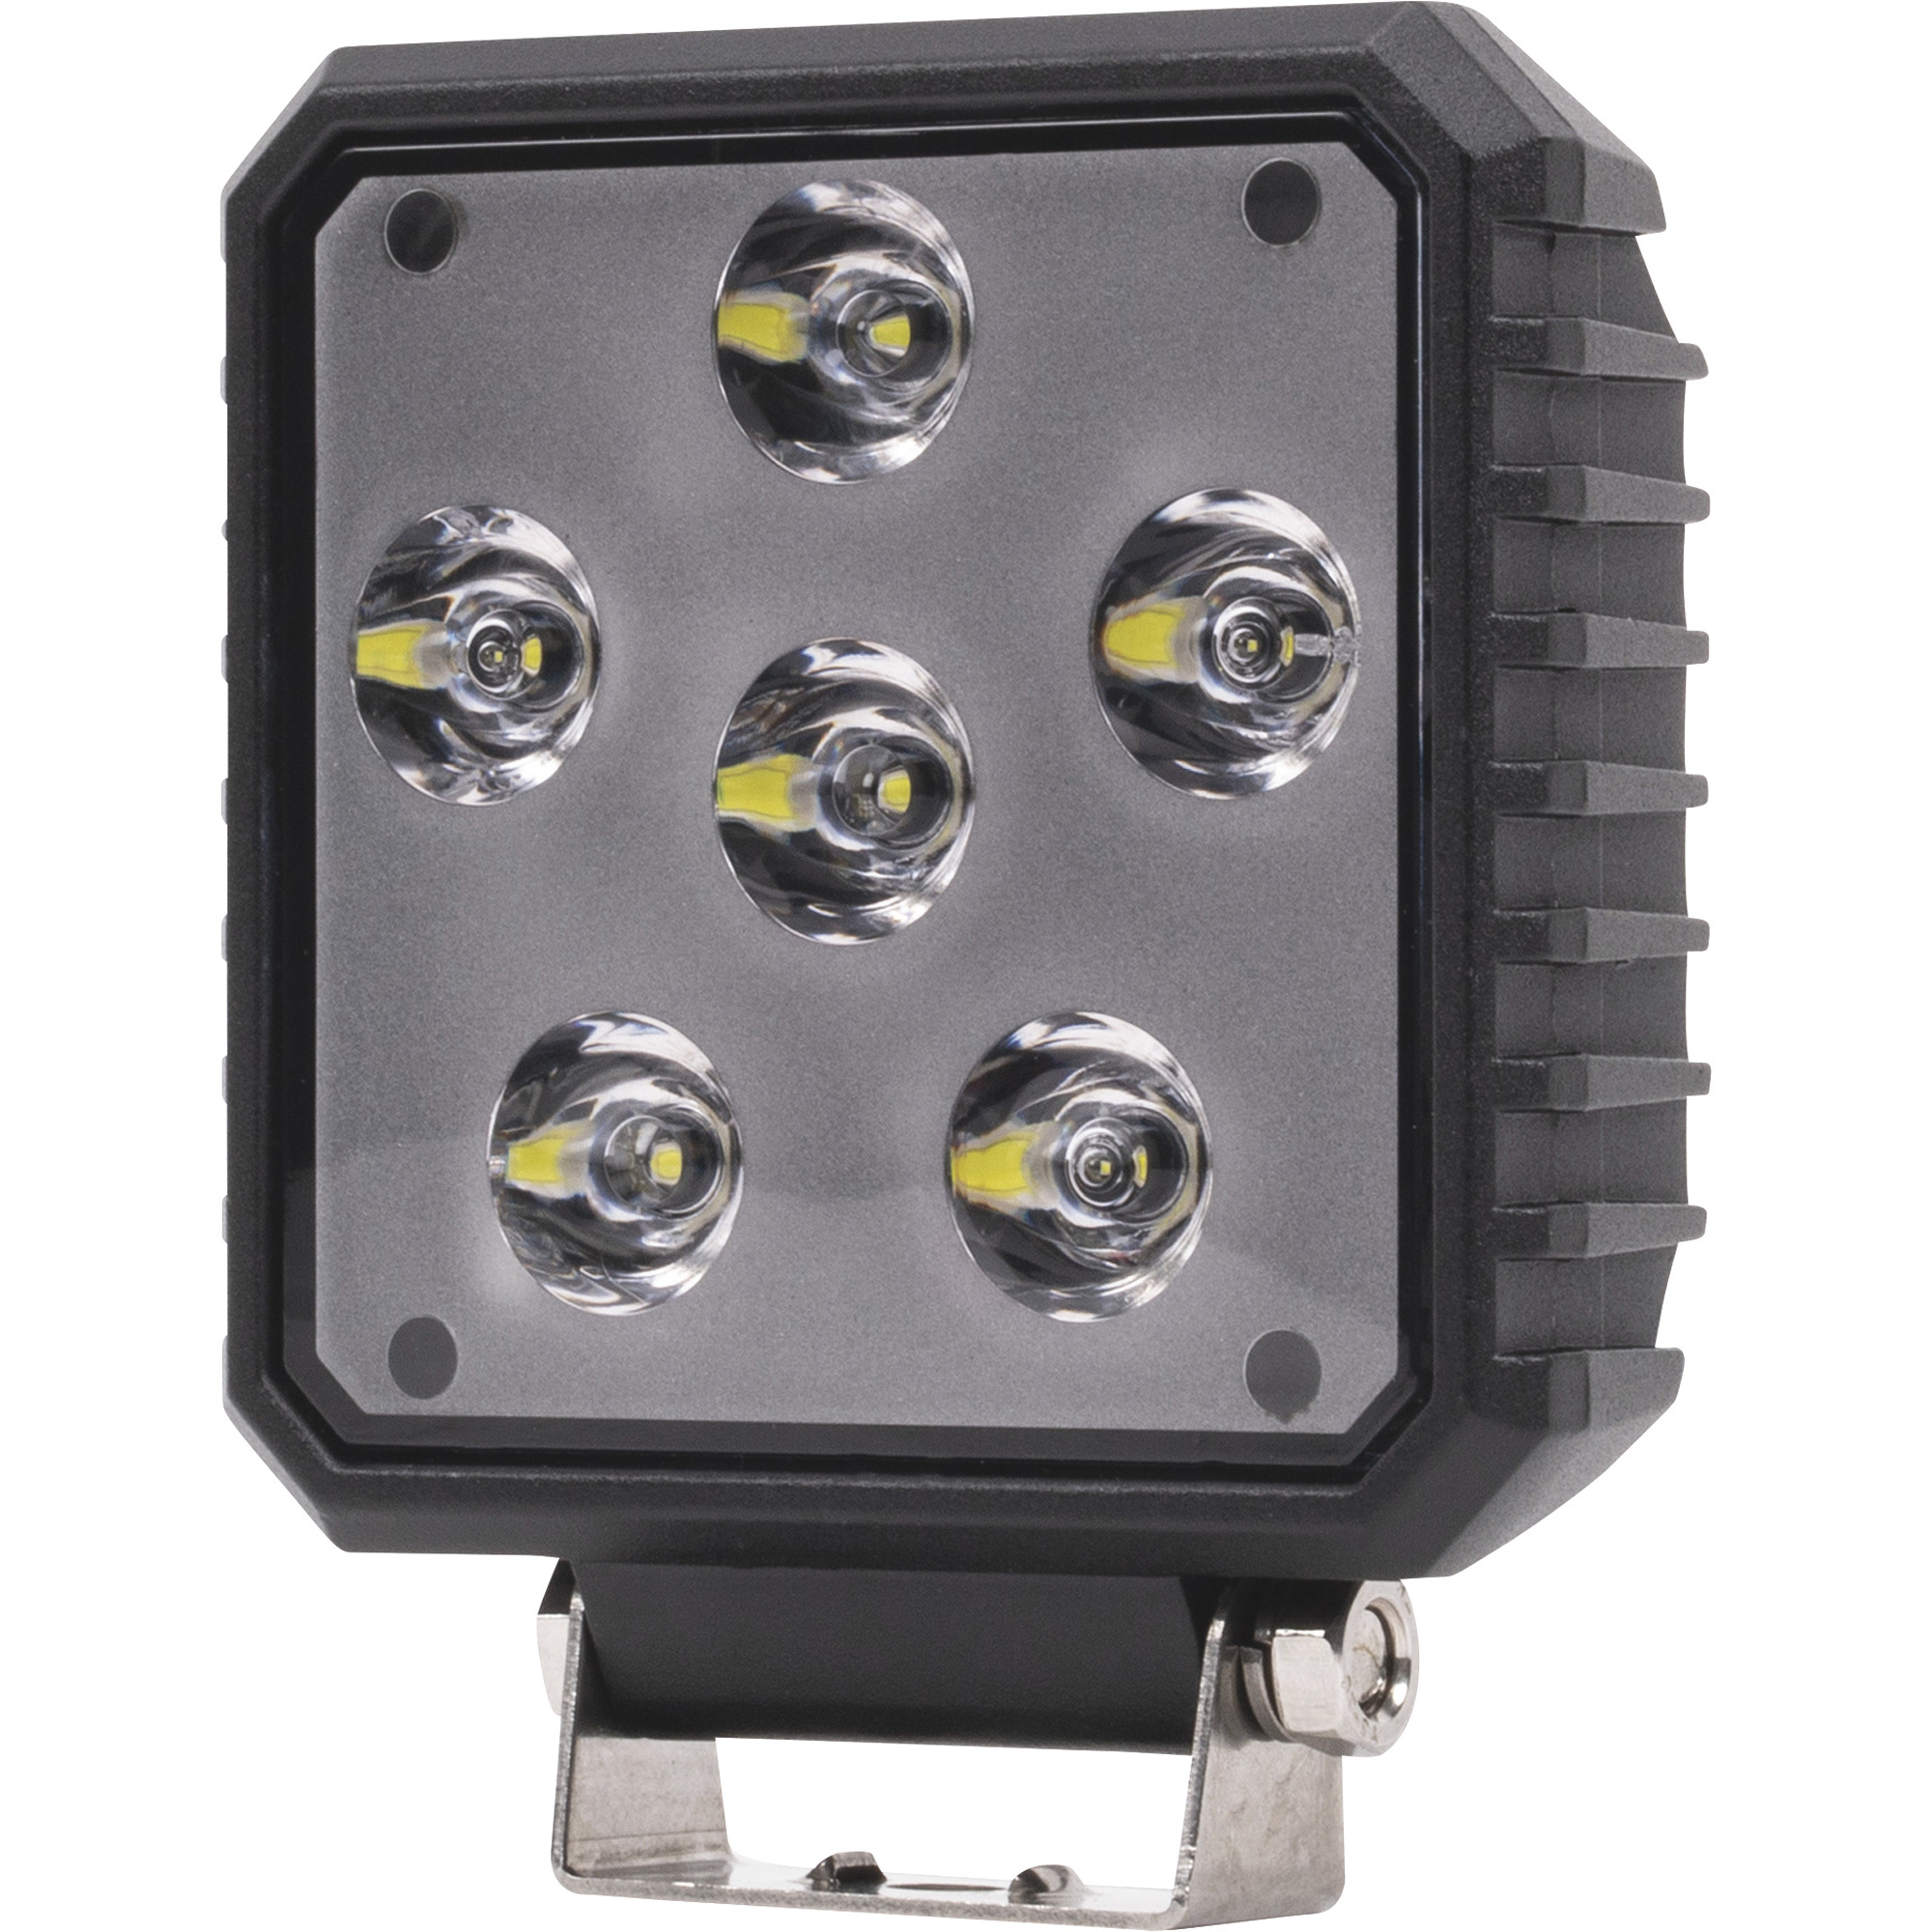 Blazer 12 Volt LED Utility Flood Light â 4Inch, Square, 4600 Raw/3000 Effective Lumens, Model CWL5043